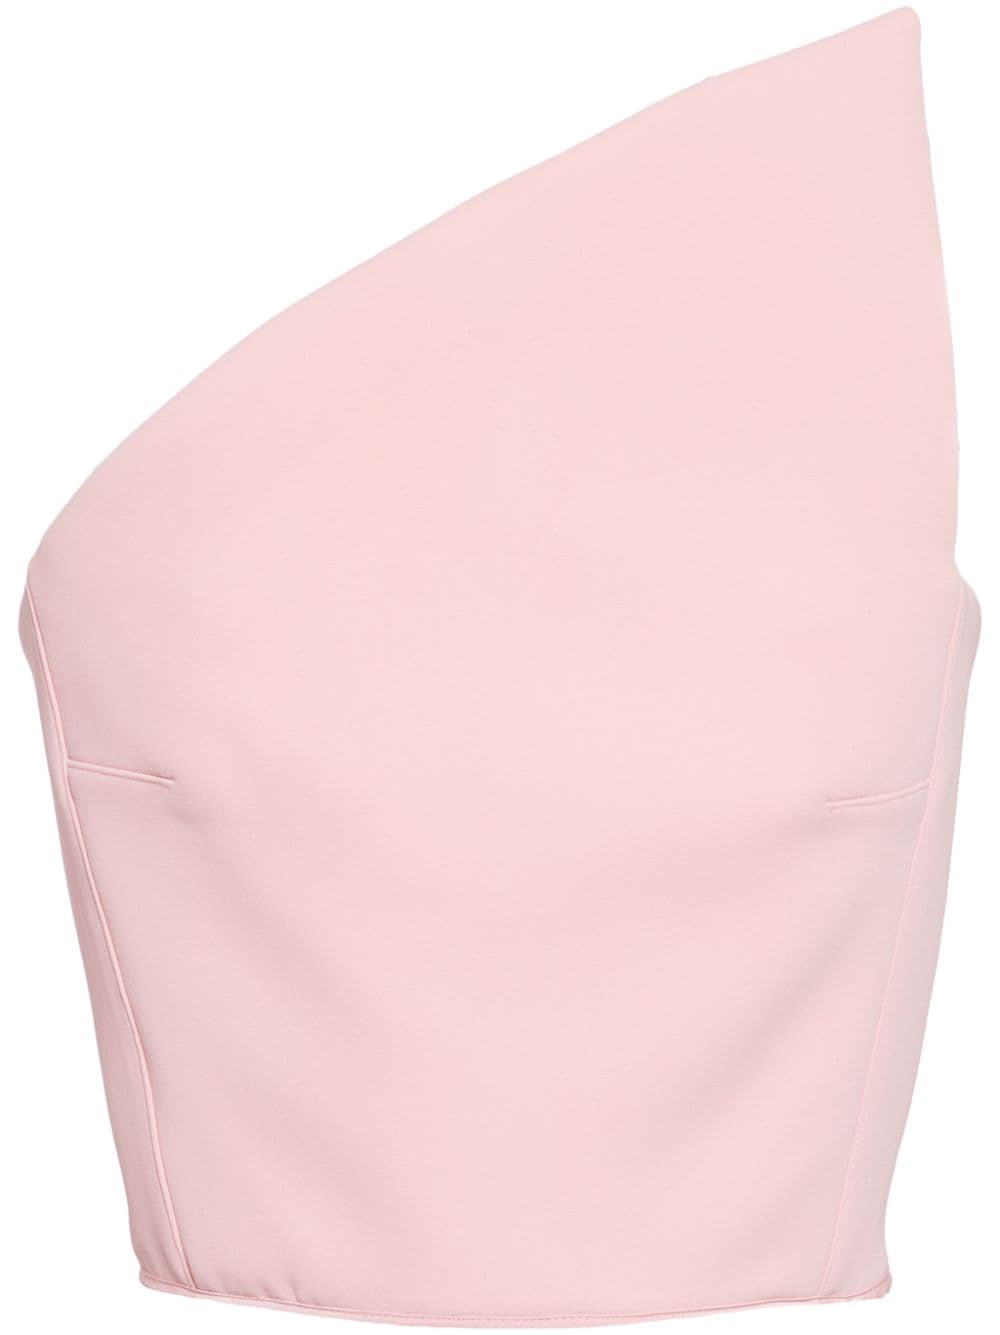 Maticevski asymmetric strapless top - Pink von Maticevski